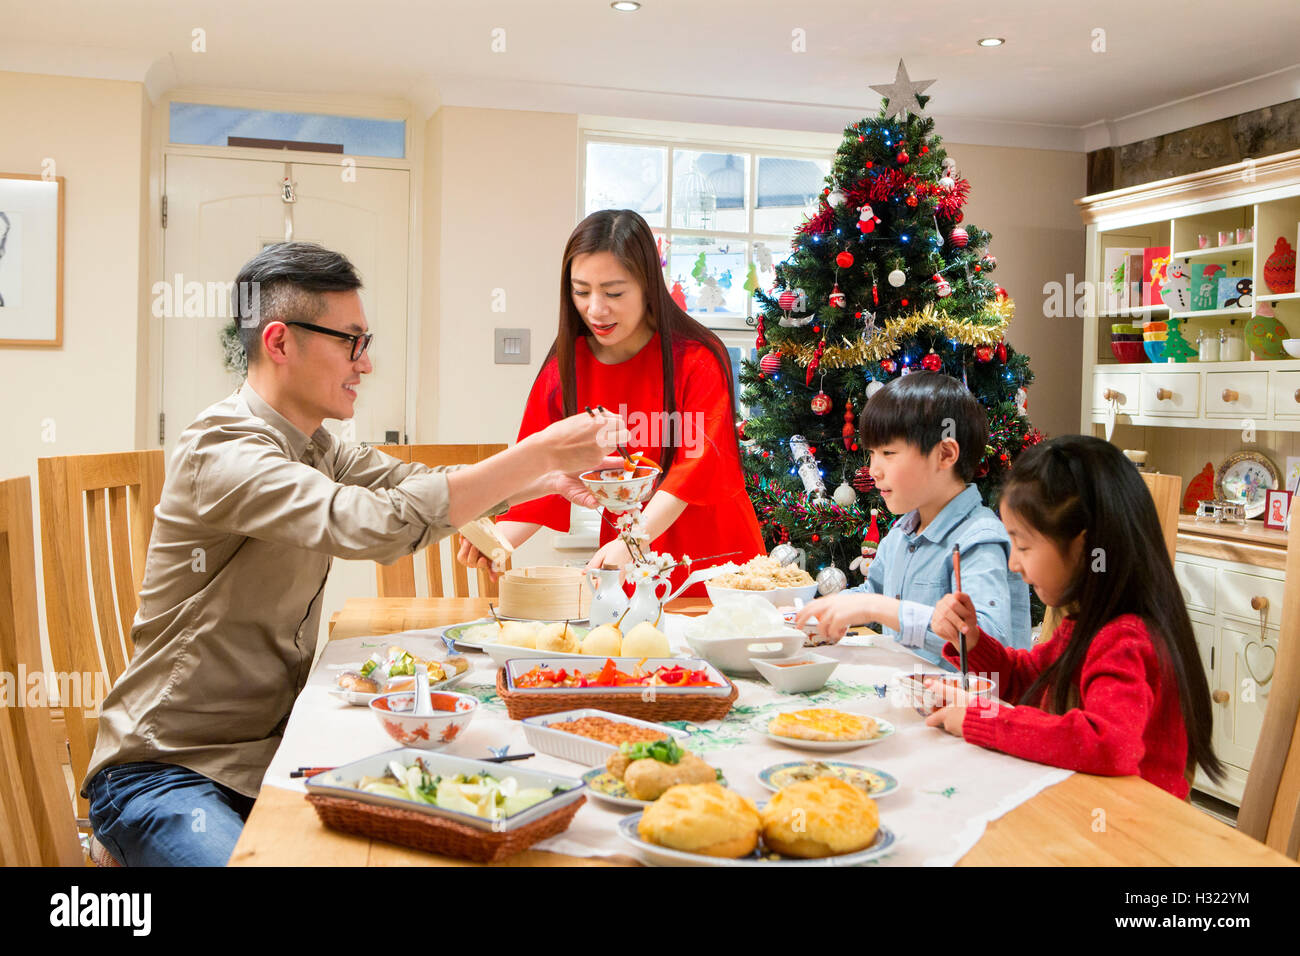 Familia china disfrutando de su cena de Navidad. Están comiendo comida china tradicional. Los padres están sirviendo alrededor del t Foto de stock